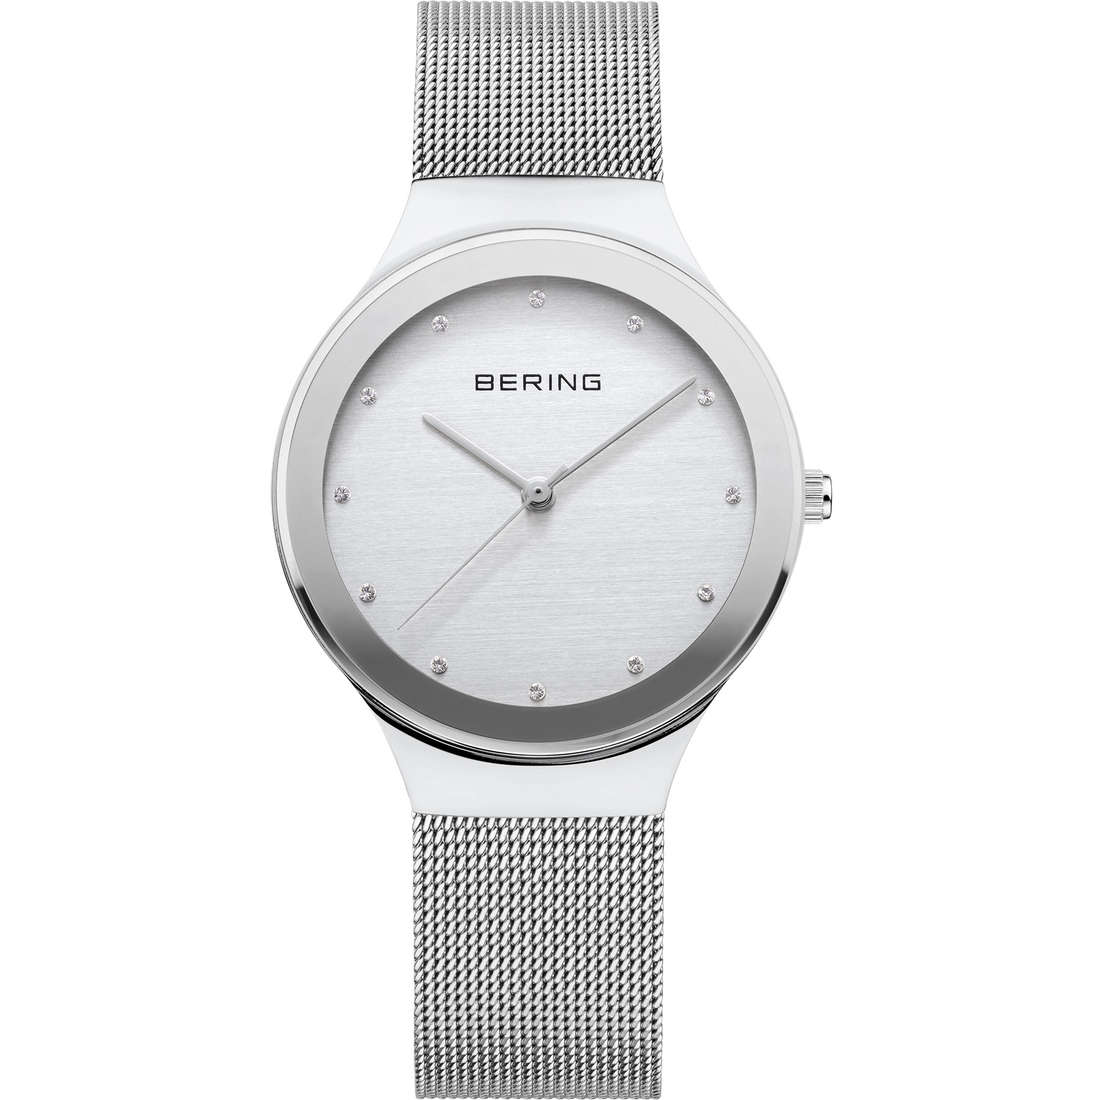 orologio al quarzo Bering donna Classic 12934-000